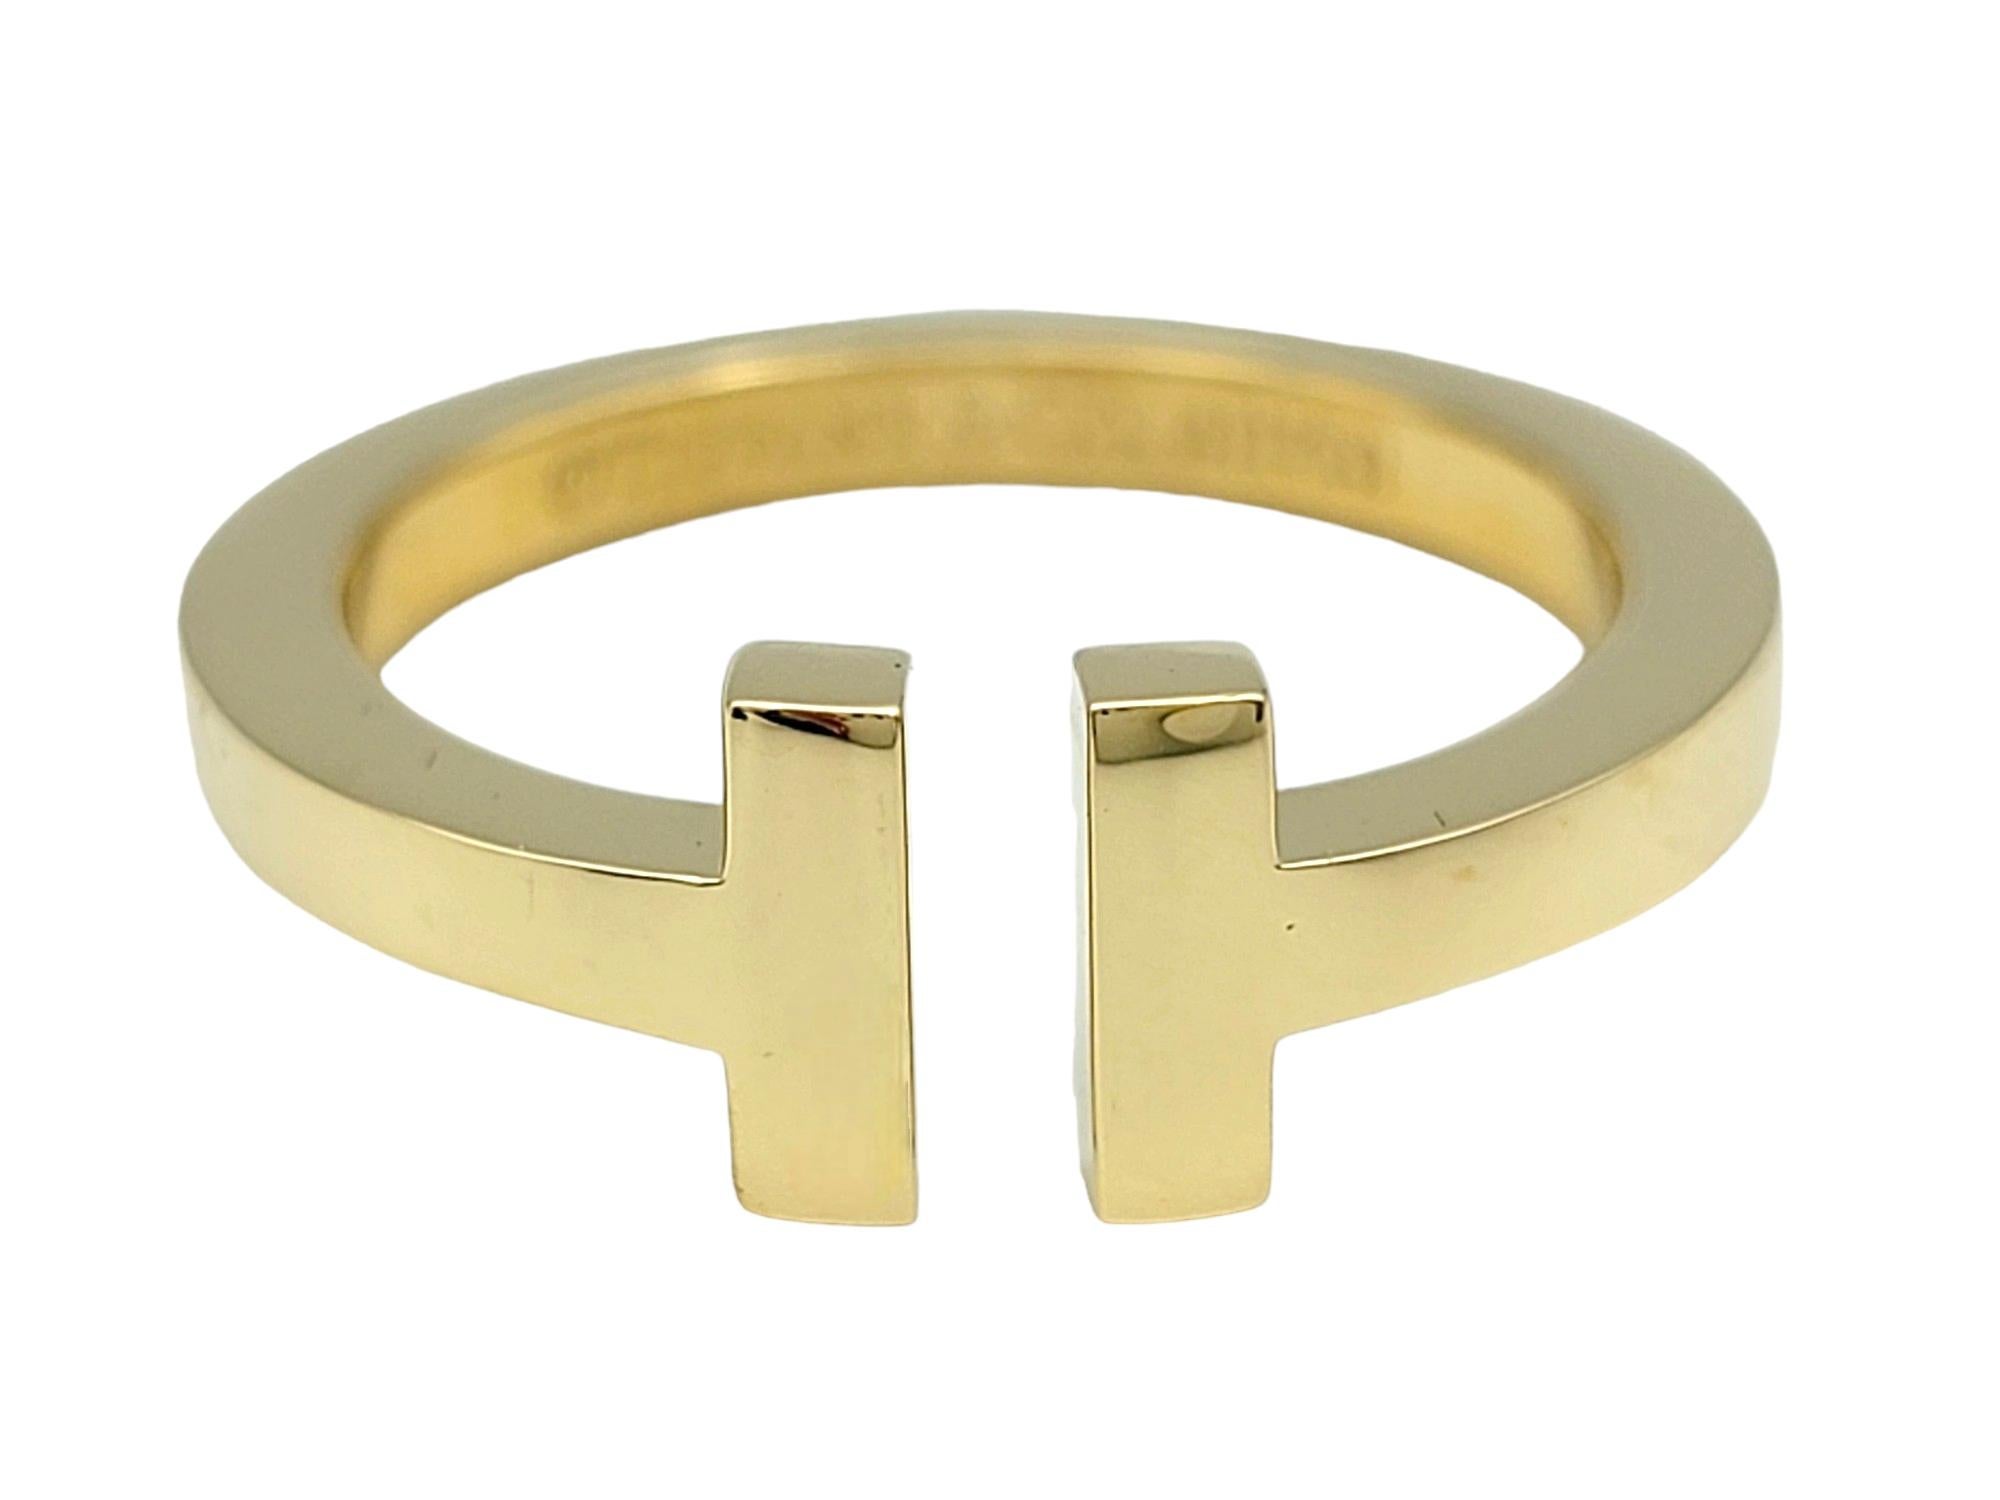 Ringgröße: 8.75

Dieser exquisite Tiffany T-Band Ring wurde von der renommierten Firma Tiffany & Co. gefertigt und ist ein zeitloses Symbol für Eleganz und Raffinesse. Die sorgfältig aus glänzendem 18-karätigem Gelbgold gefertigte Uhr besticht durch